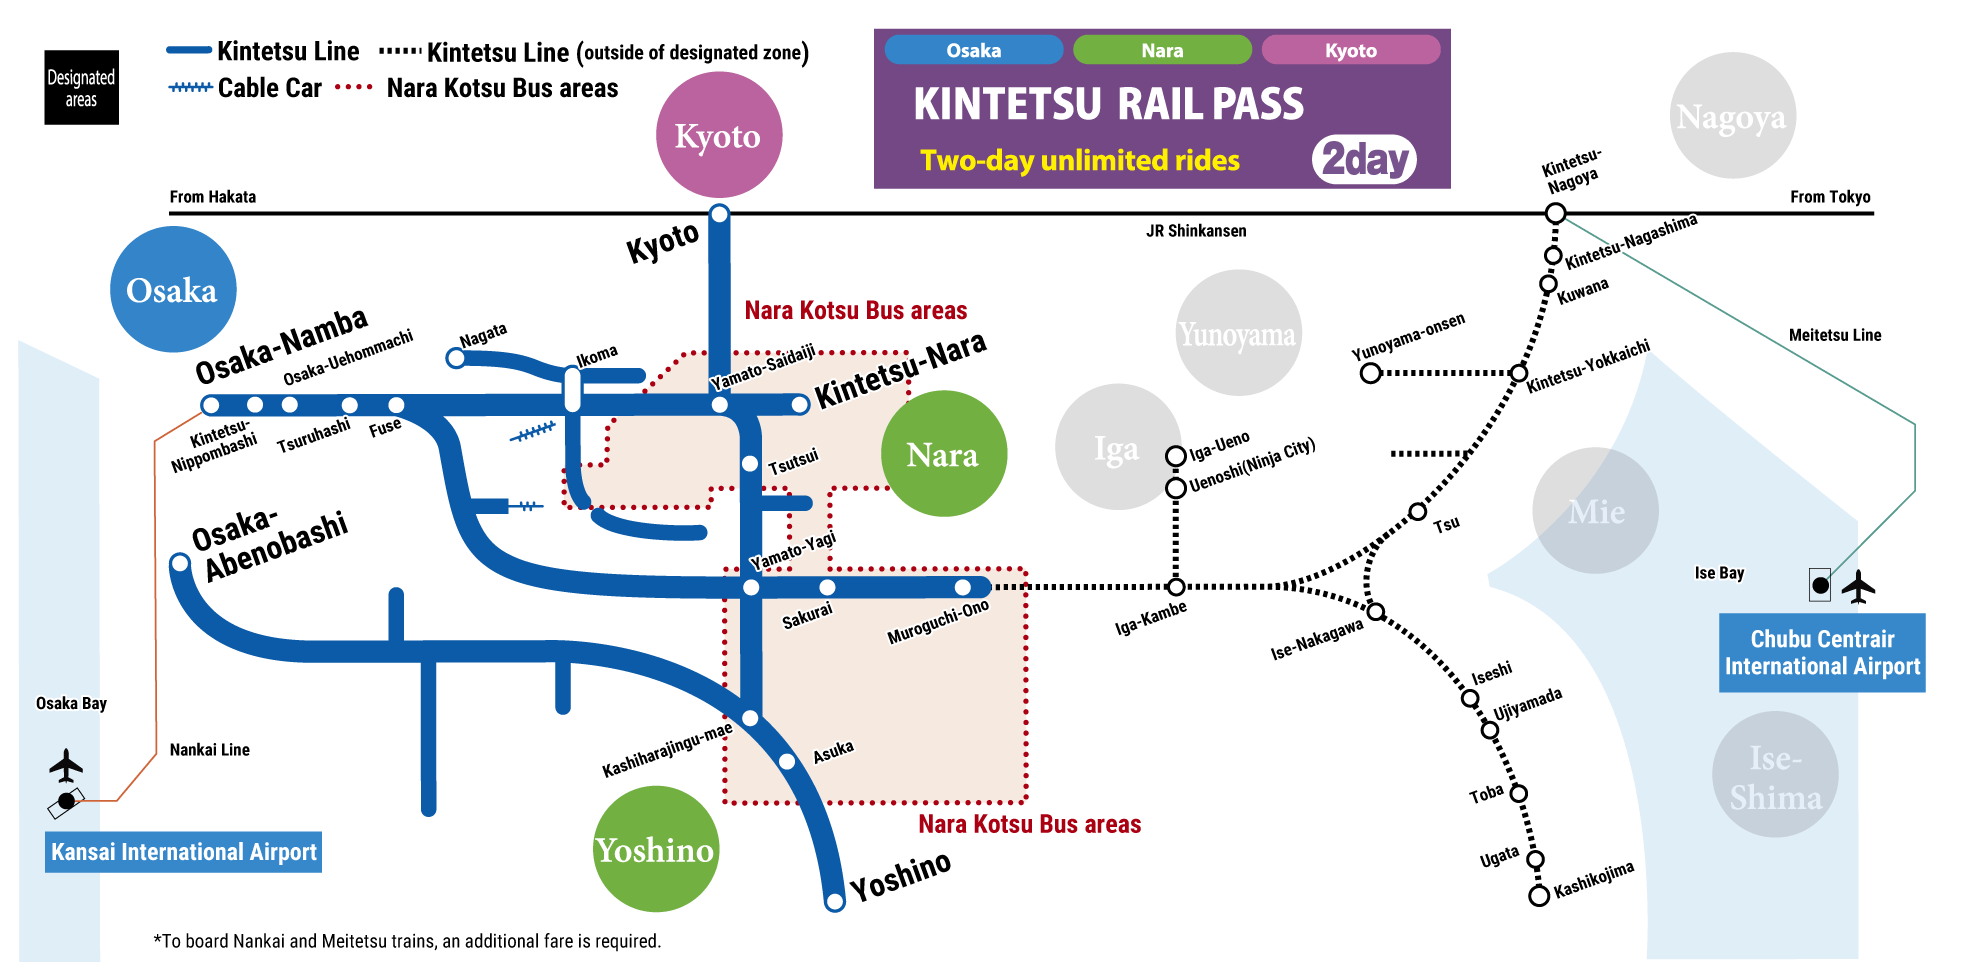 KINTETSU RAIL PASS 2day